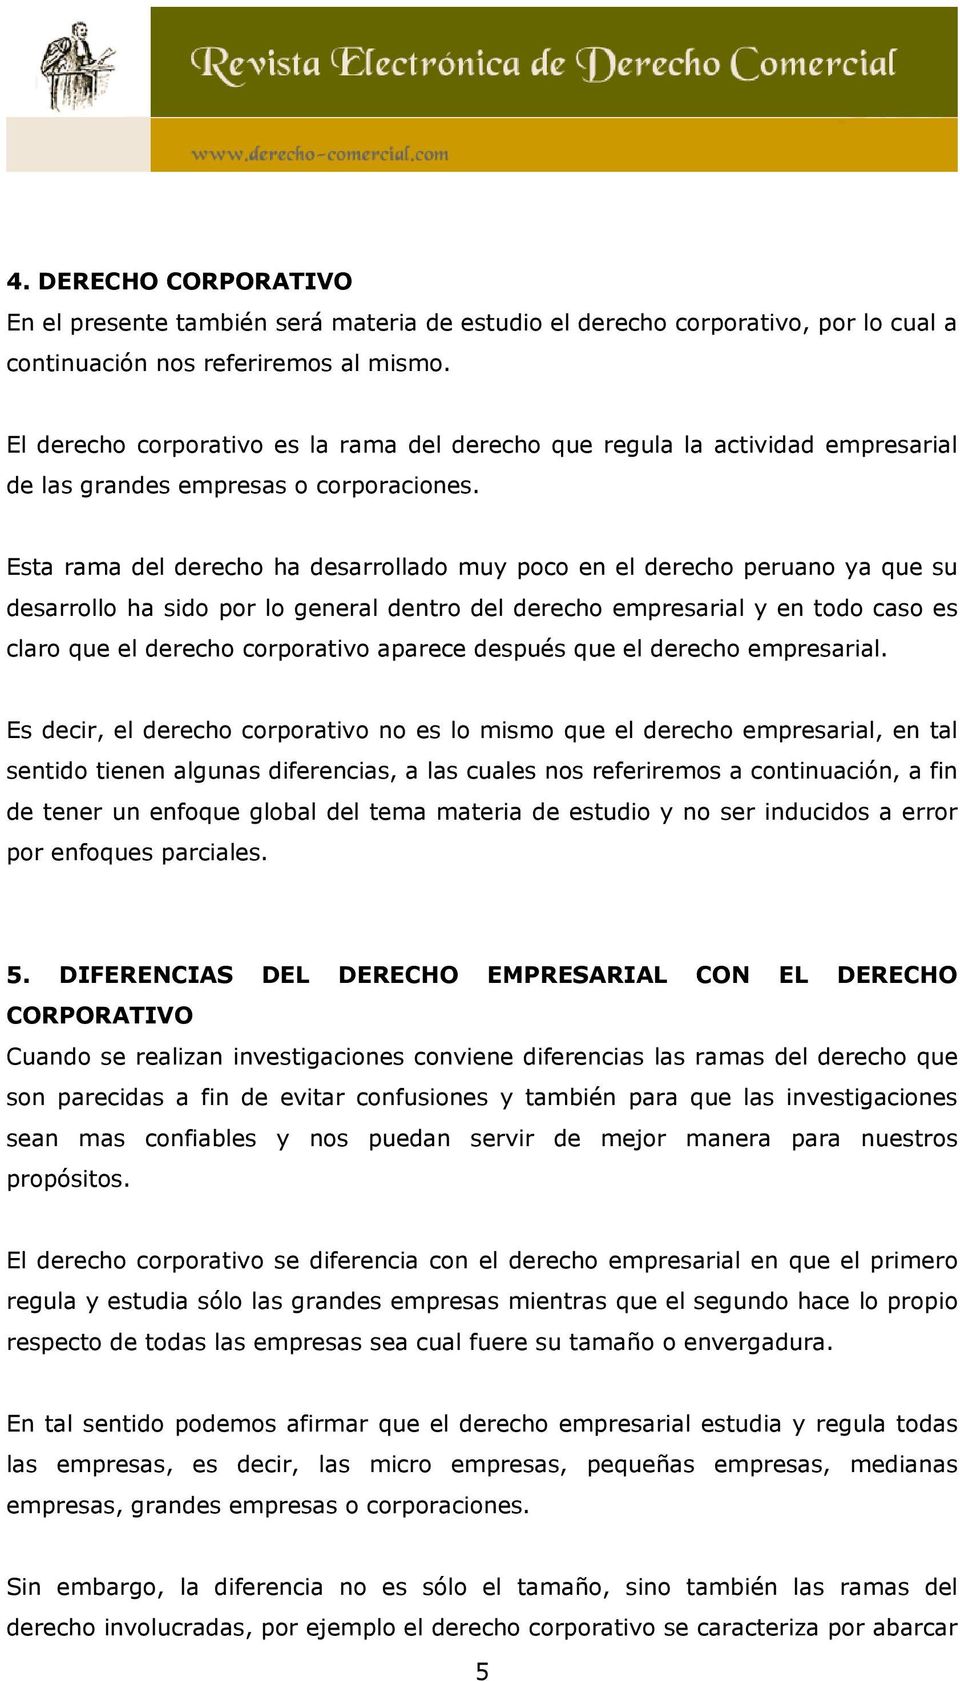 Esta rama del derecho ha desarrollado muy poco en el derecho peruano ya que su desarrollo ha sido por lo general dentro del derecho empresarial y en todo caso es claro que el derecho corporativo